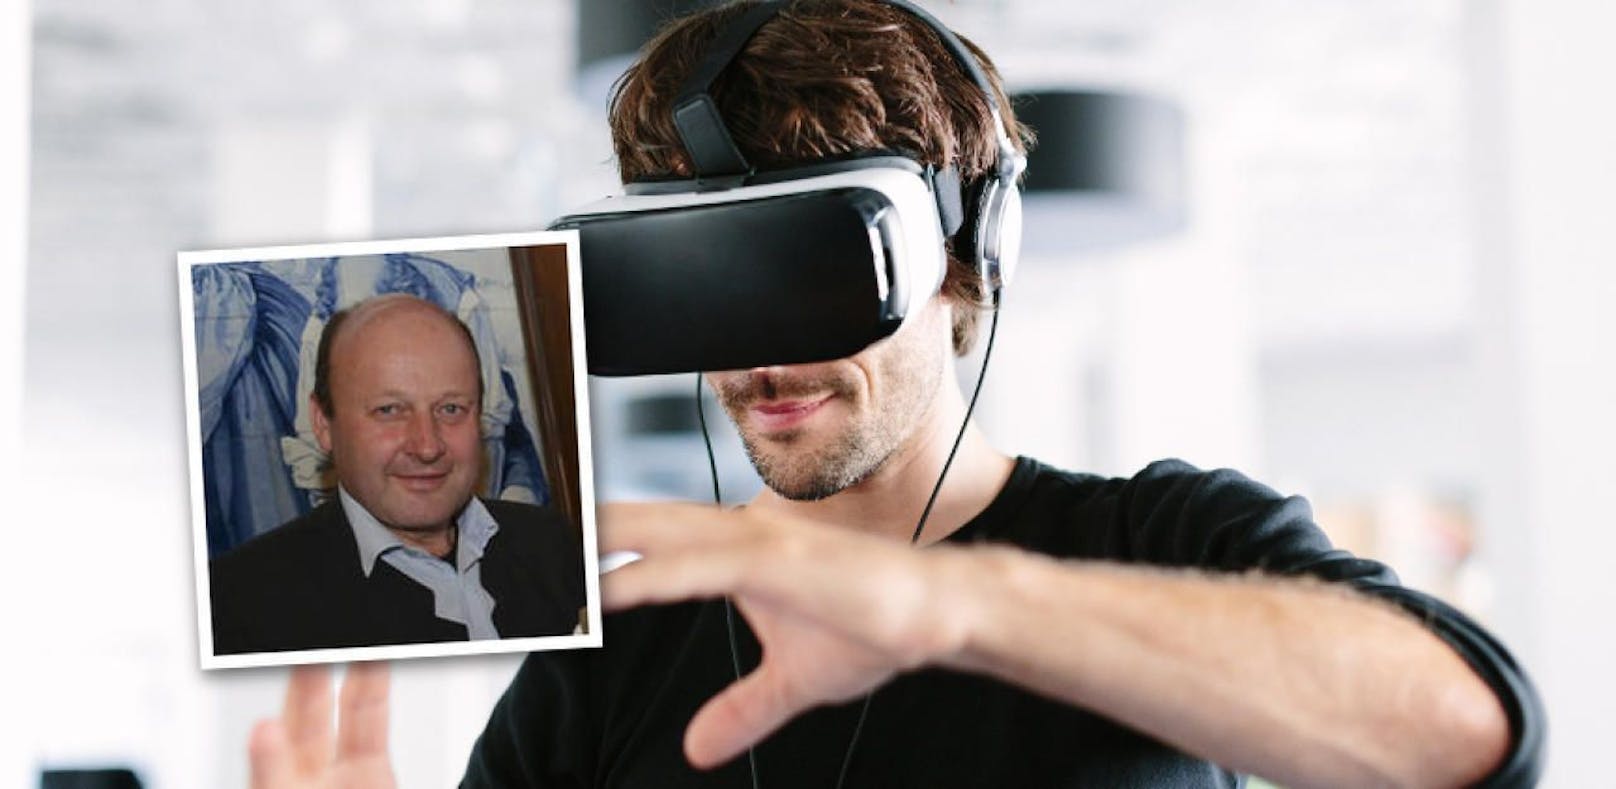 Aigner (kl. Foto) setzt auf VR-Brillen als Entscheidungshilfe.